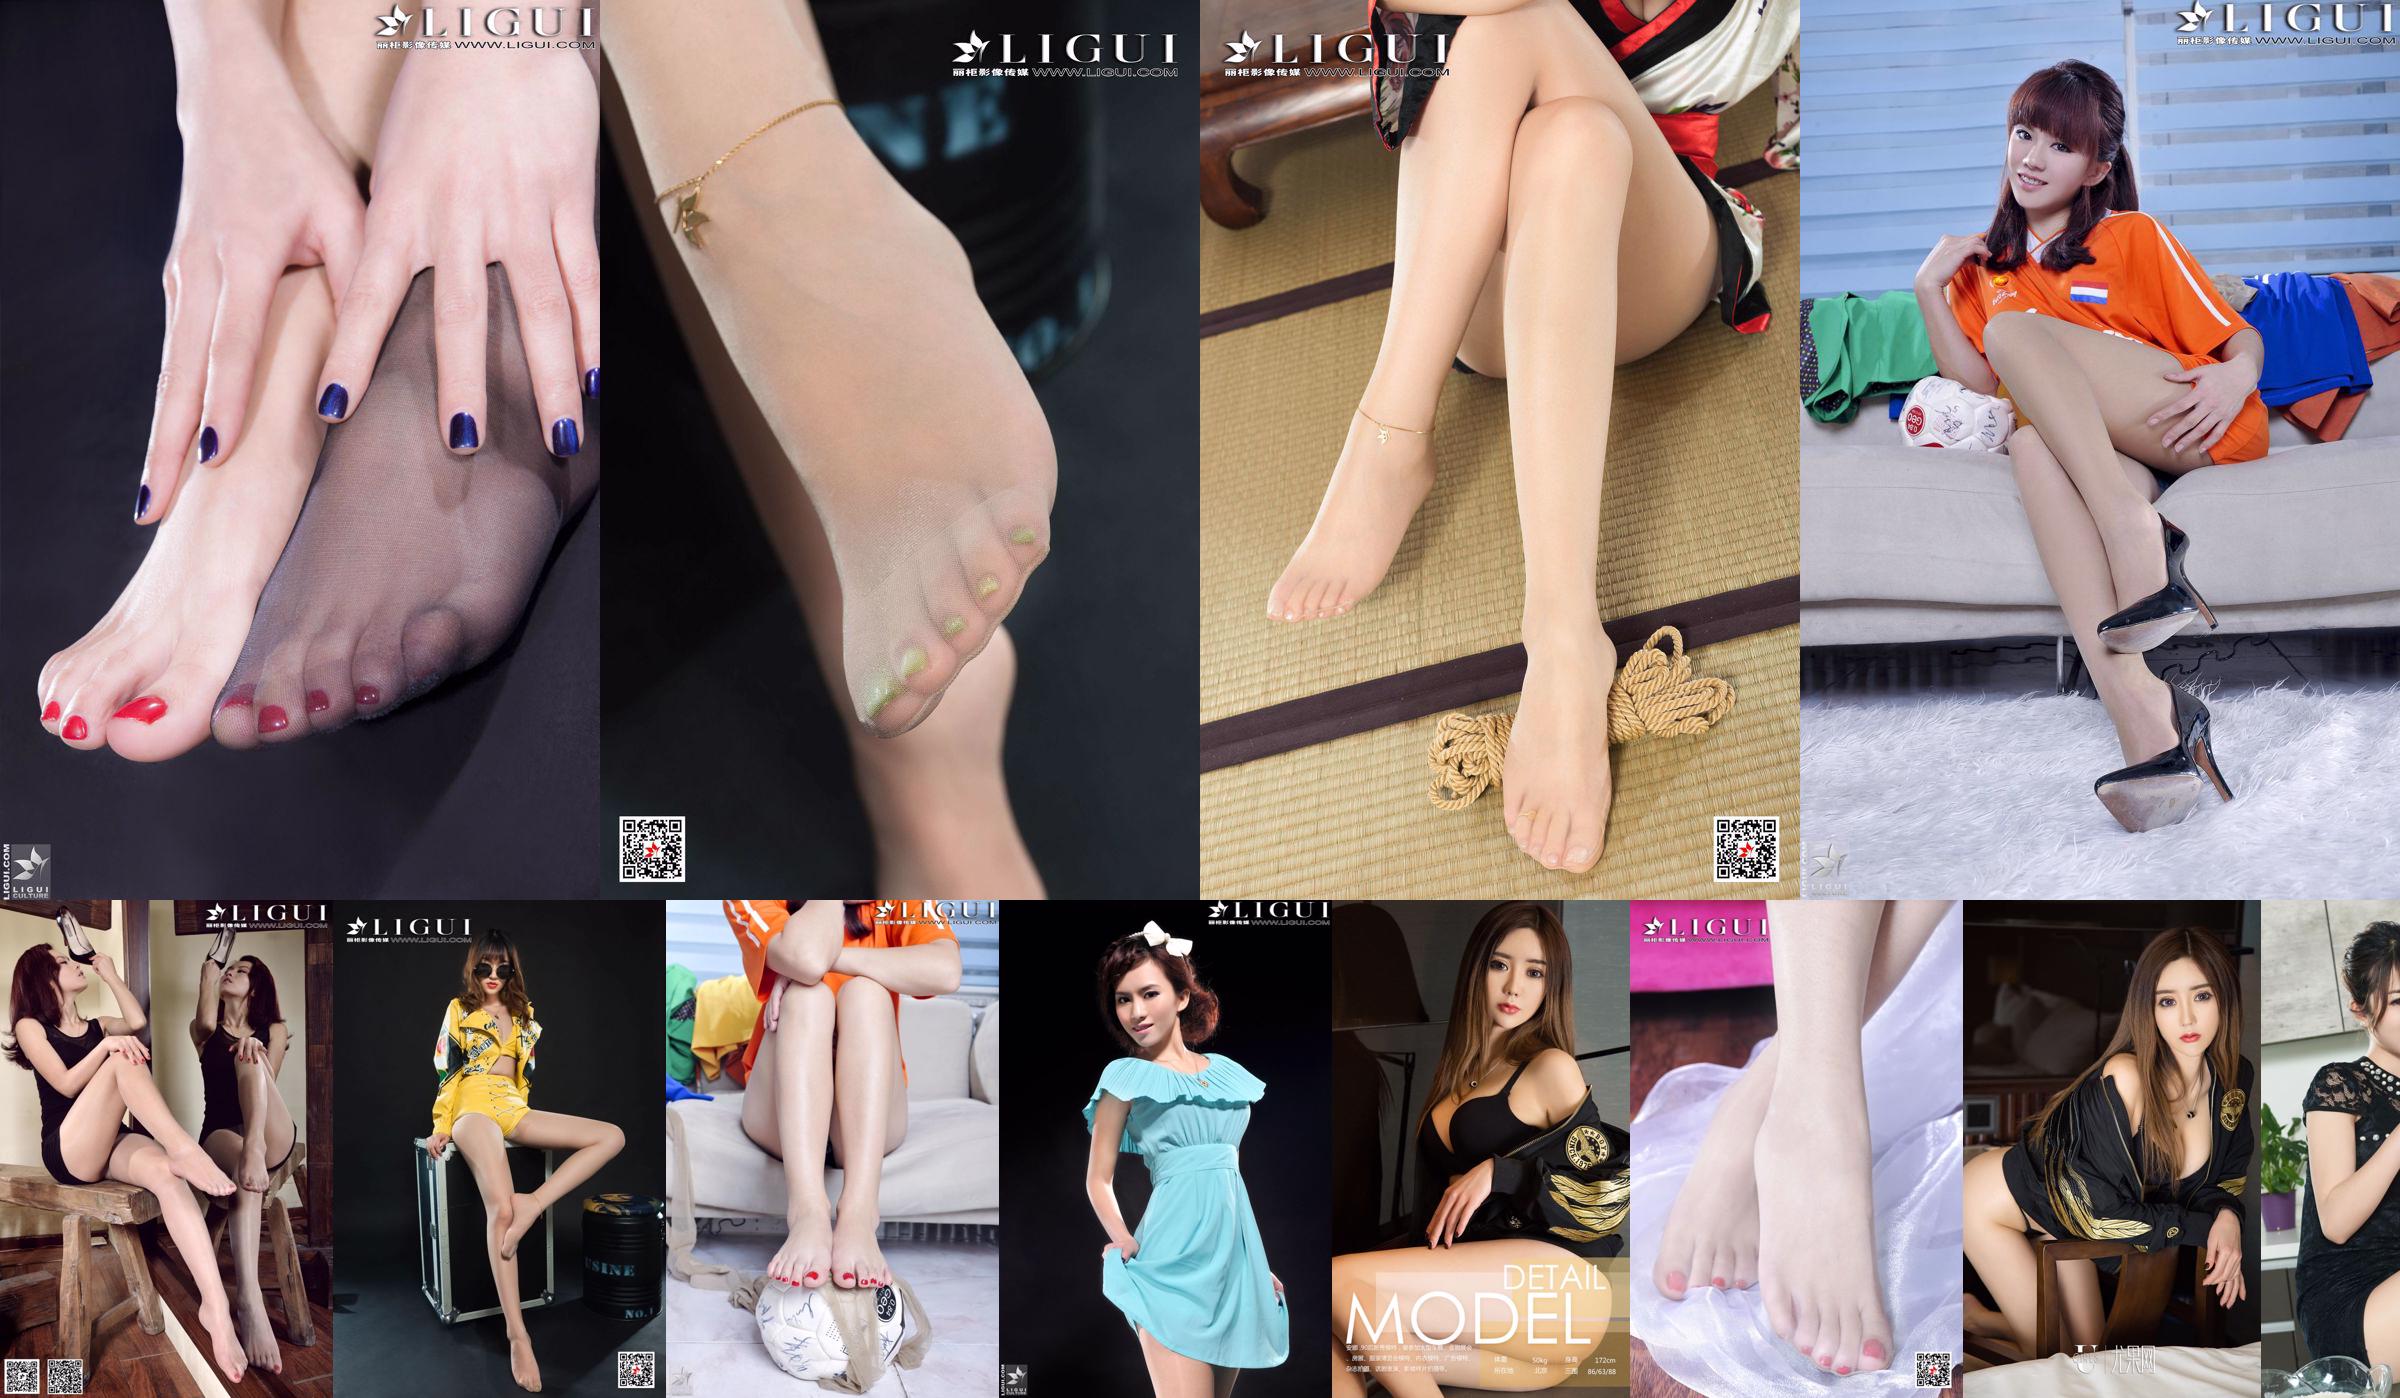 Obras completas de la modelo Anna "Cheongsam Lady Silky Foot" [LiGui] Fotos de piernas hermosas y pies sedosos No.26e11b Página 1